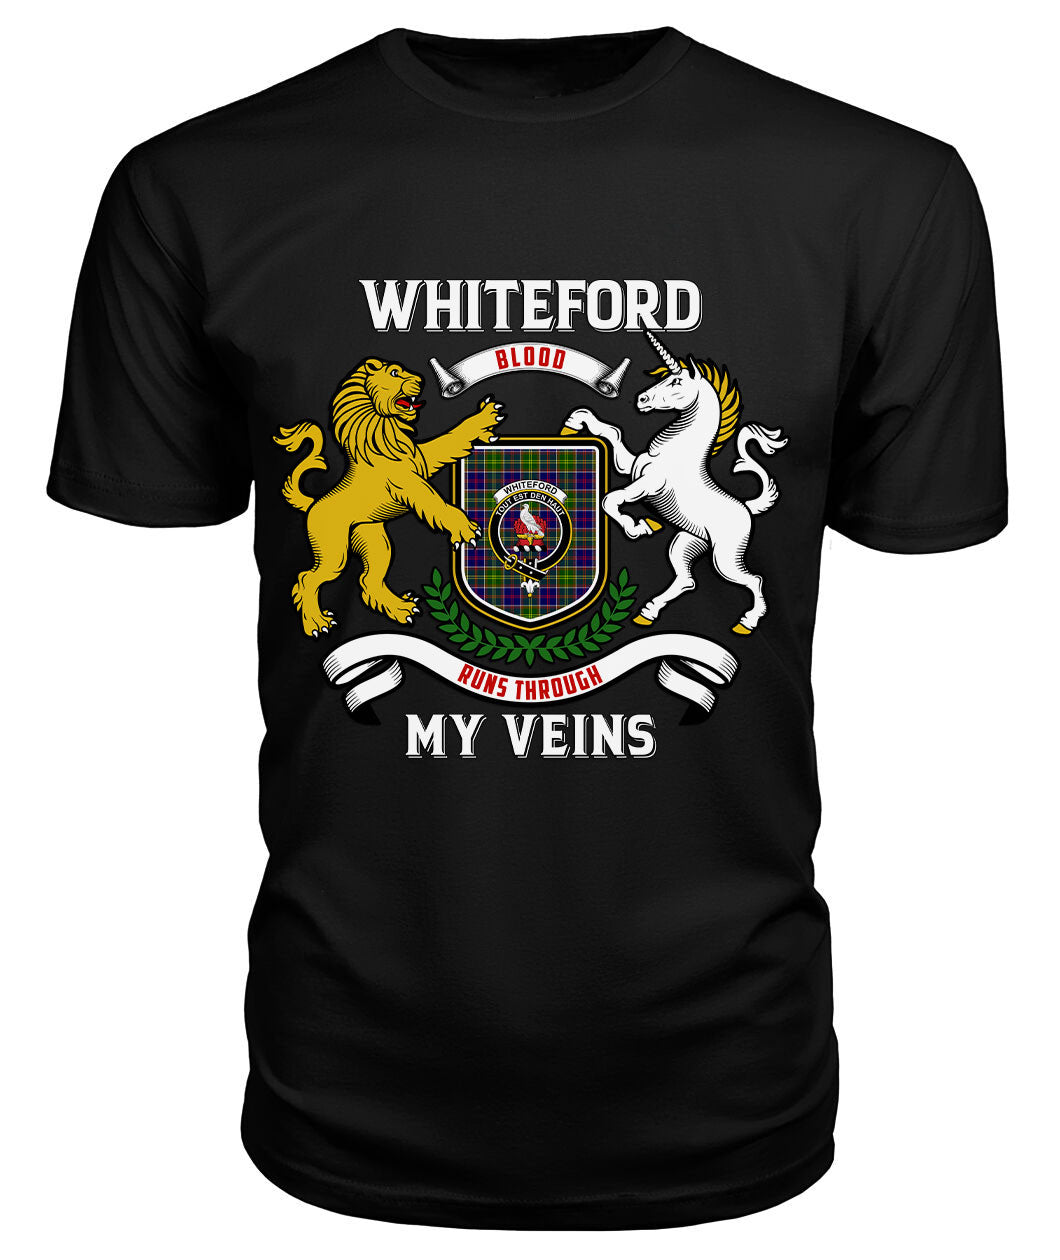 Whiteford Tartan Crest 2D T-shirt - Blood Runs Through My Veins Style